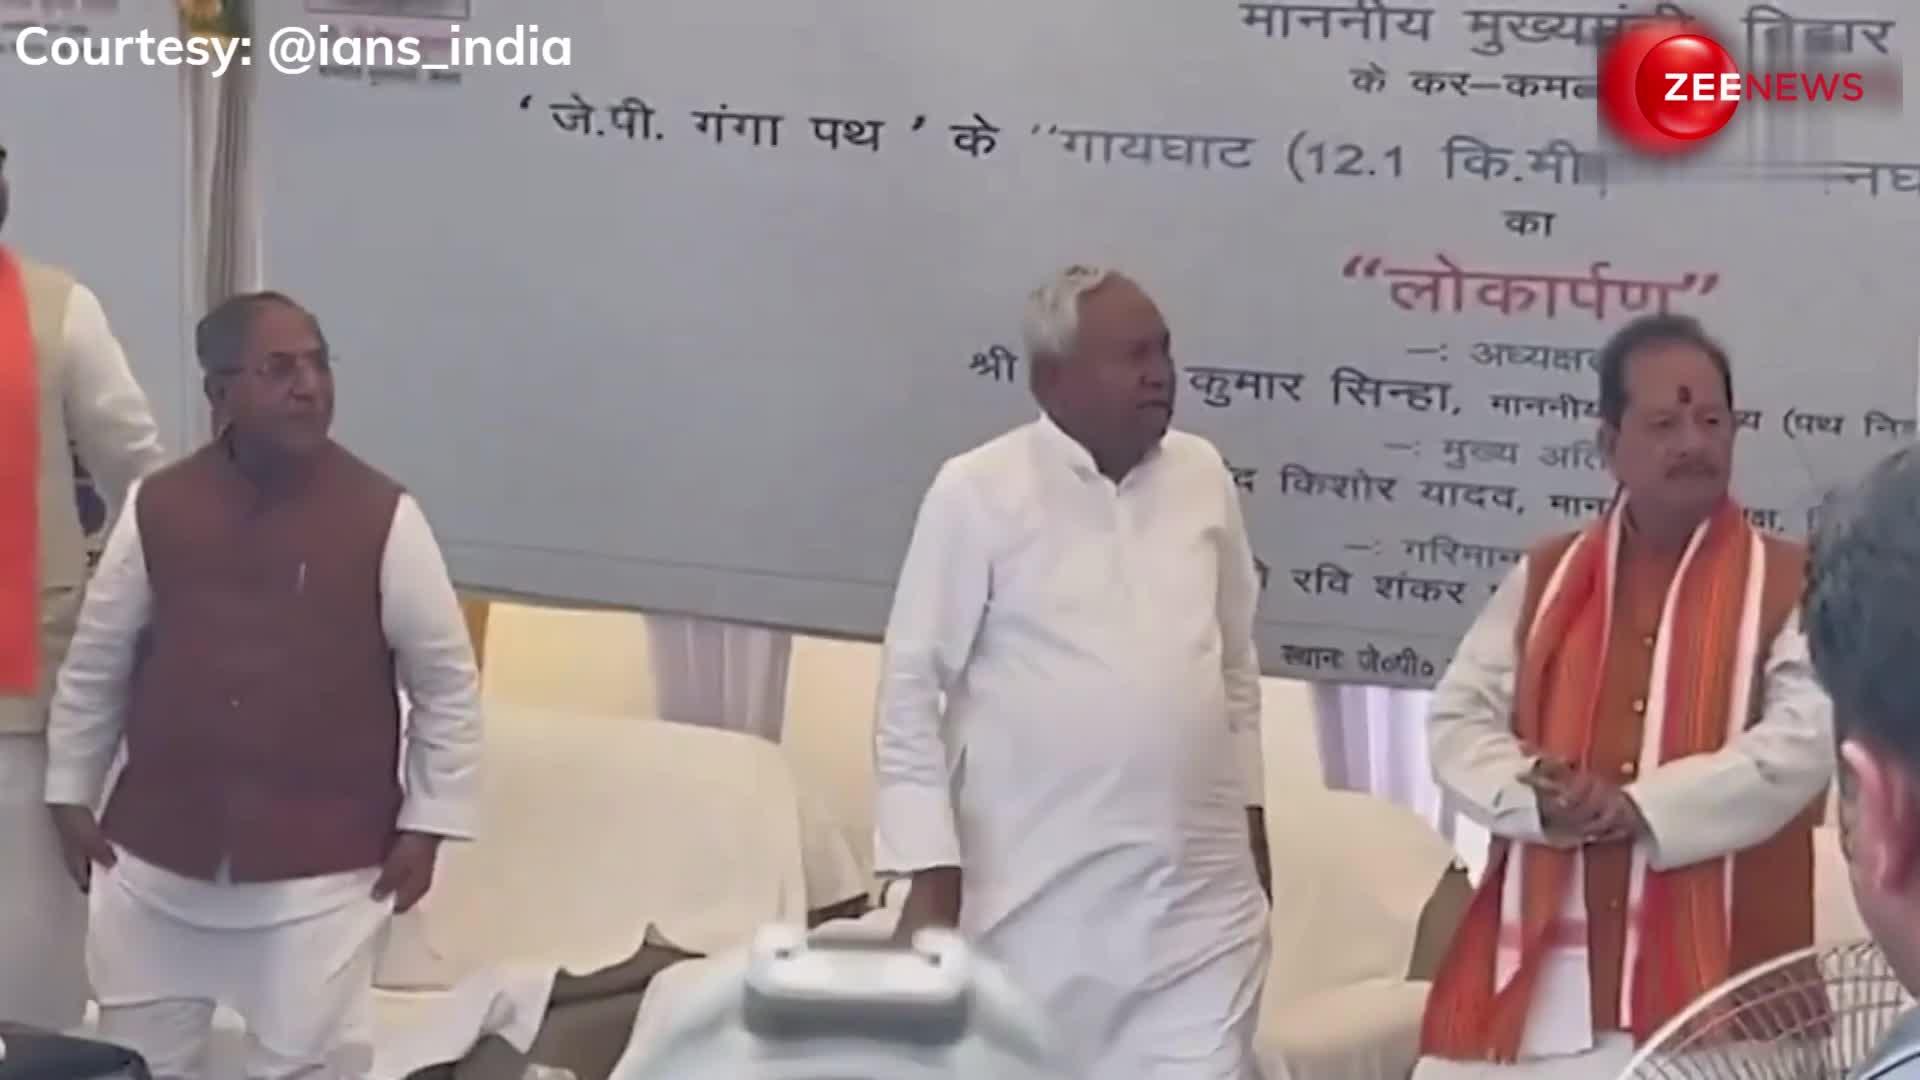 VIDEO: 'आप कहिए तो हम आपके पैर छू लें...' भरे मंच पर इंजीनियर पर भड़के CM नीतीश कुमार